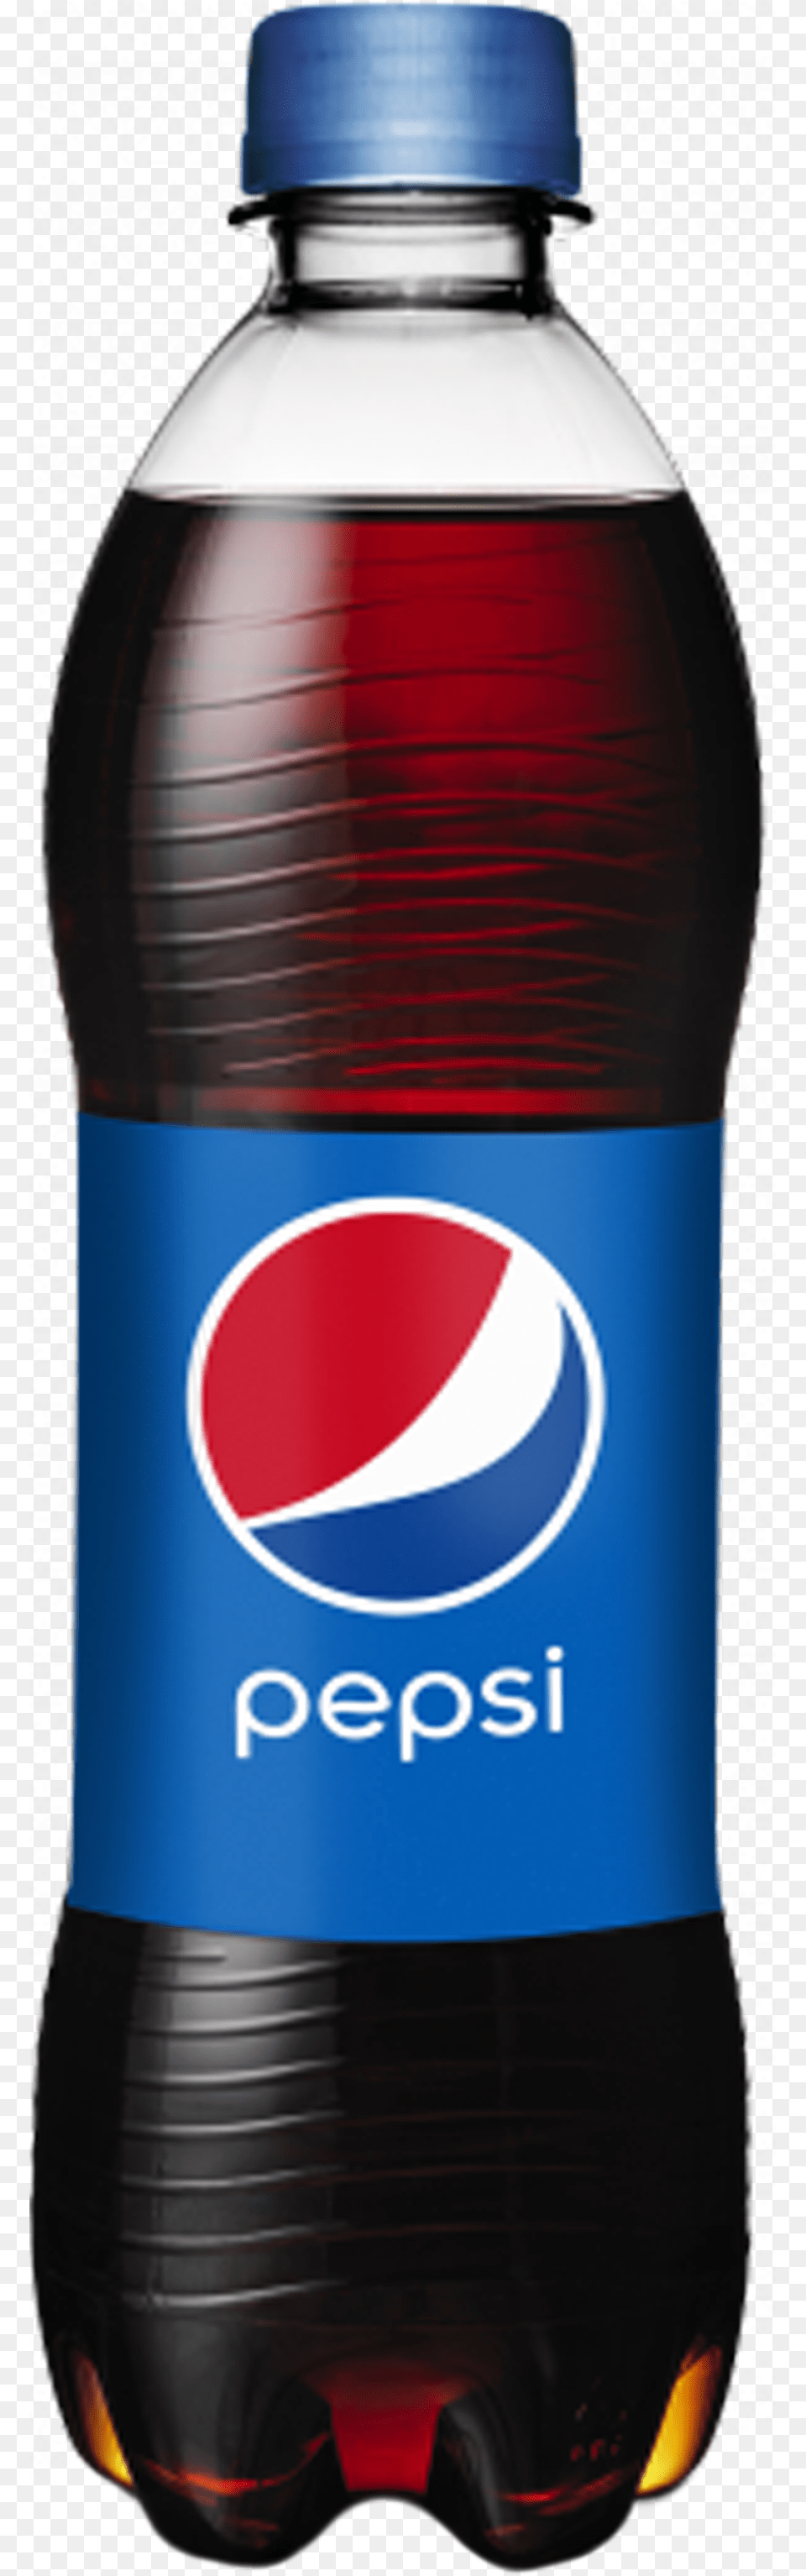 Pepsi, Beverage, Soda, Bottle, Shaker Png Image